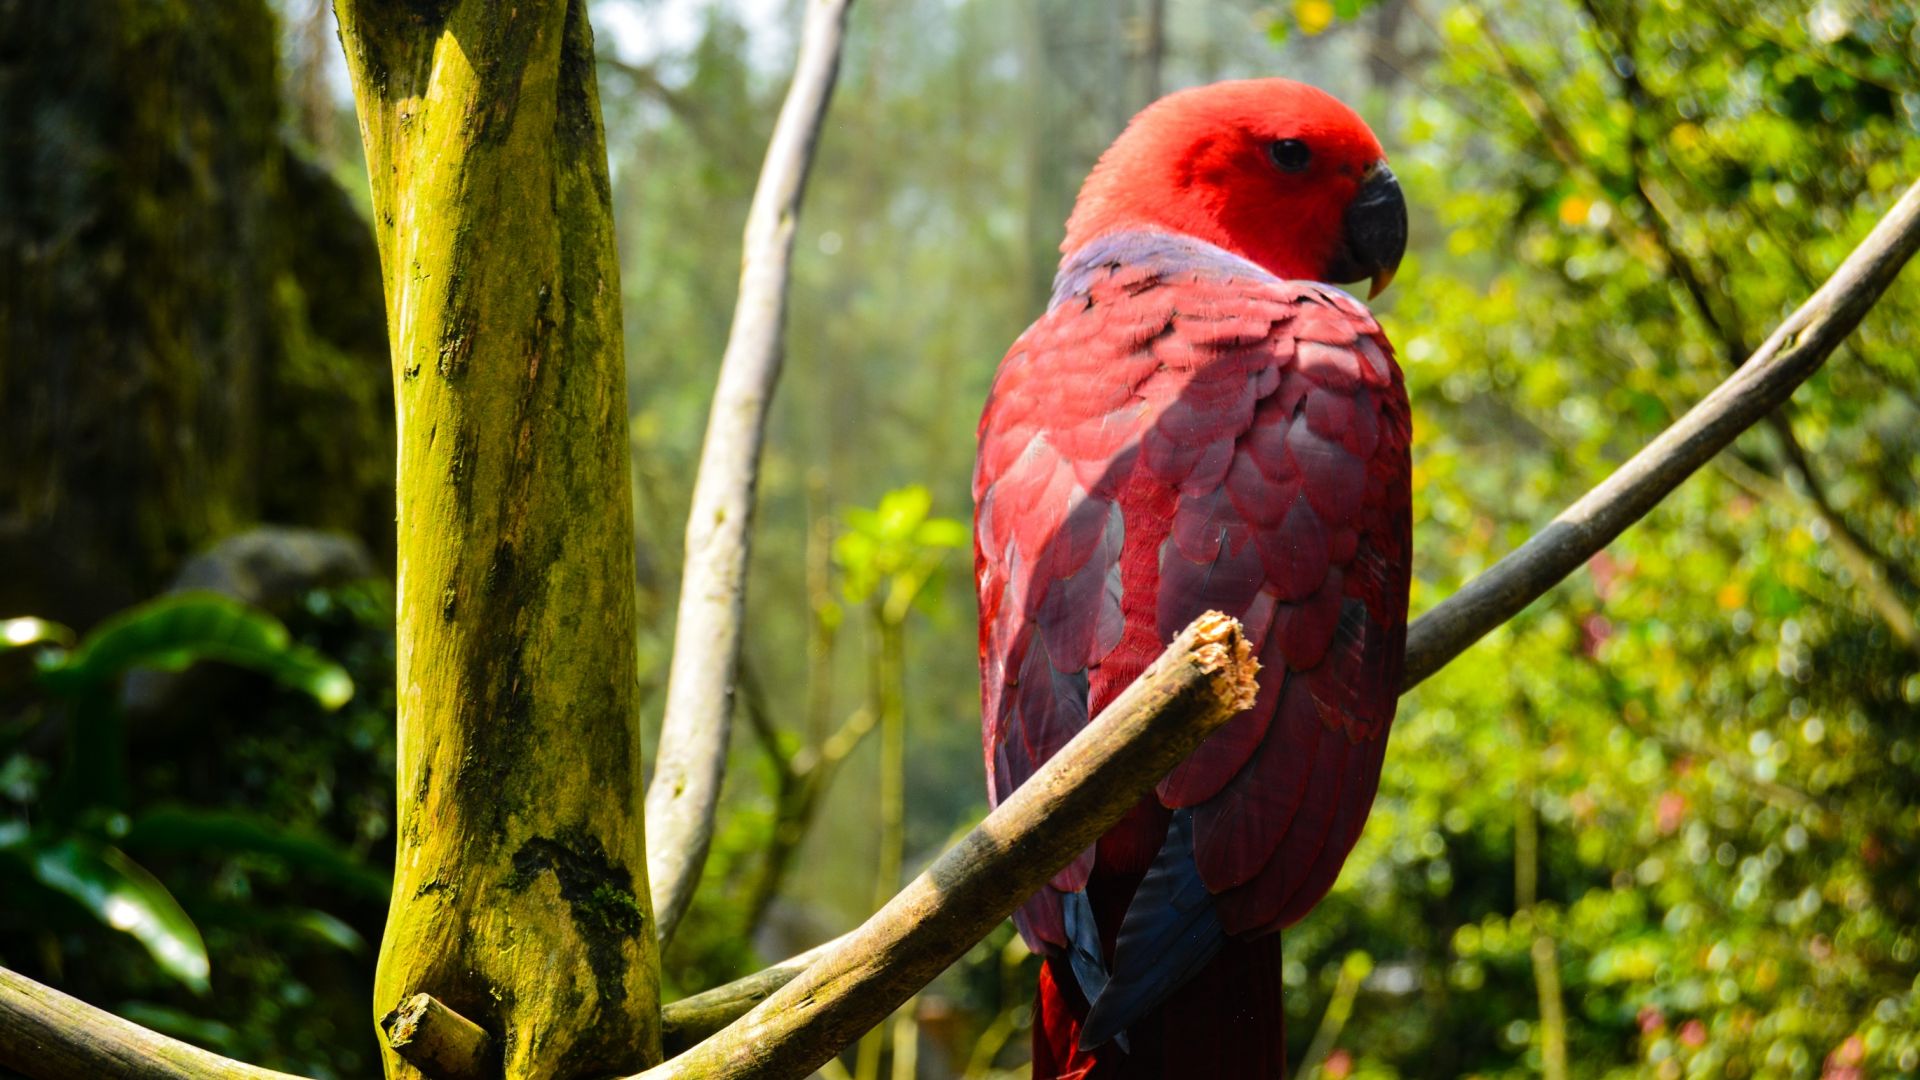 Wallpaper Red parrot, bird, tree branch